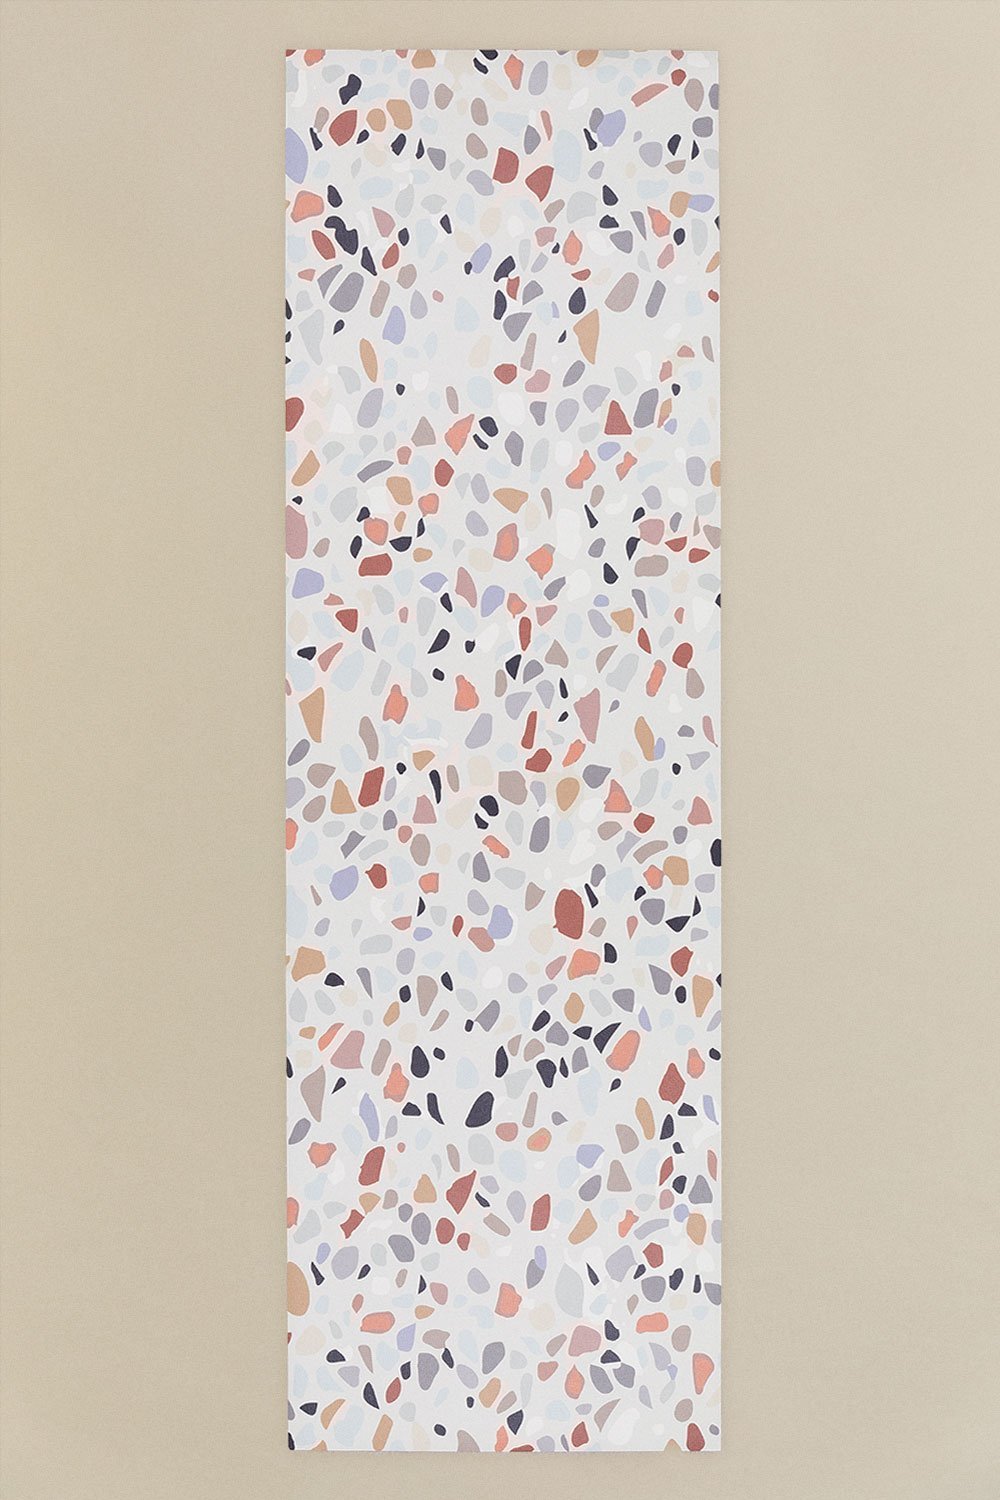 Tappeto in vinile (200x60 cm) Zirab, immagine della galleria 1